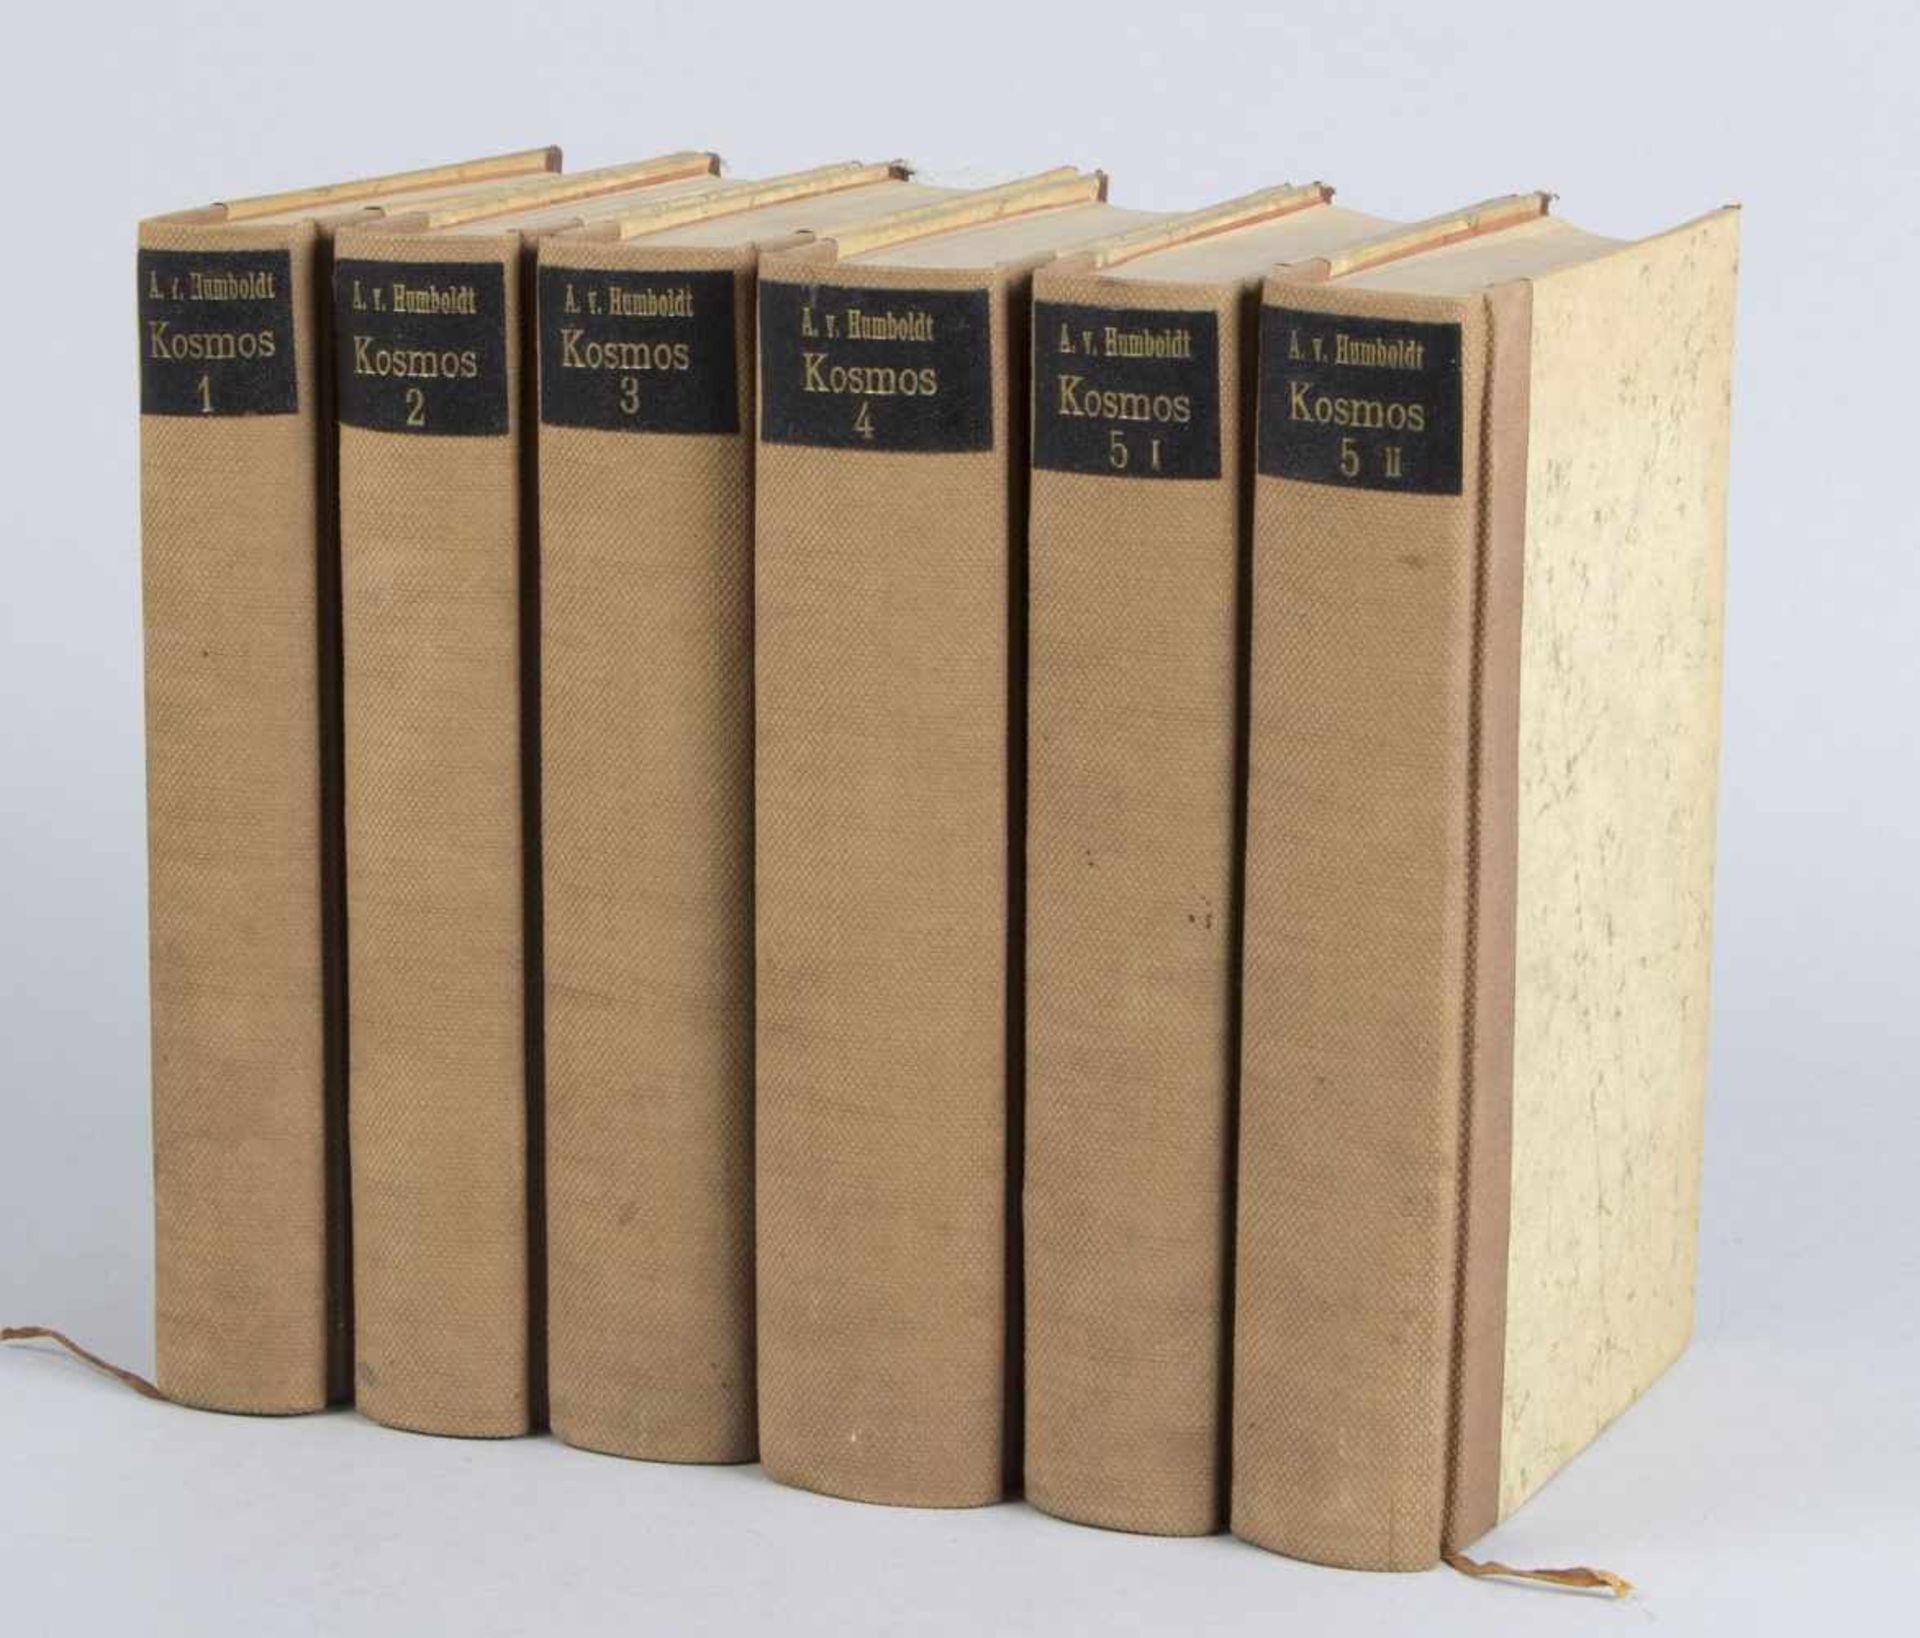 Humboldt, A.v.Kosmos. Entwurf einer physischen Weltbeschreibung. Bde. 1-5 I und II. 1845. Insg. 6